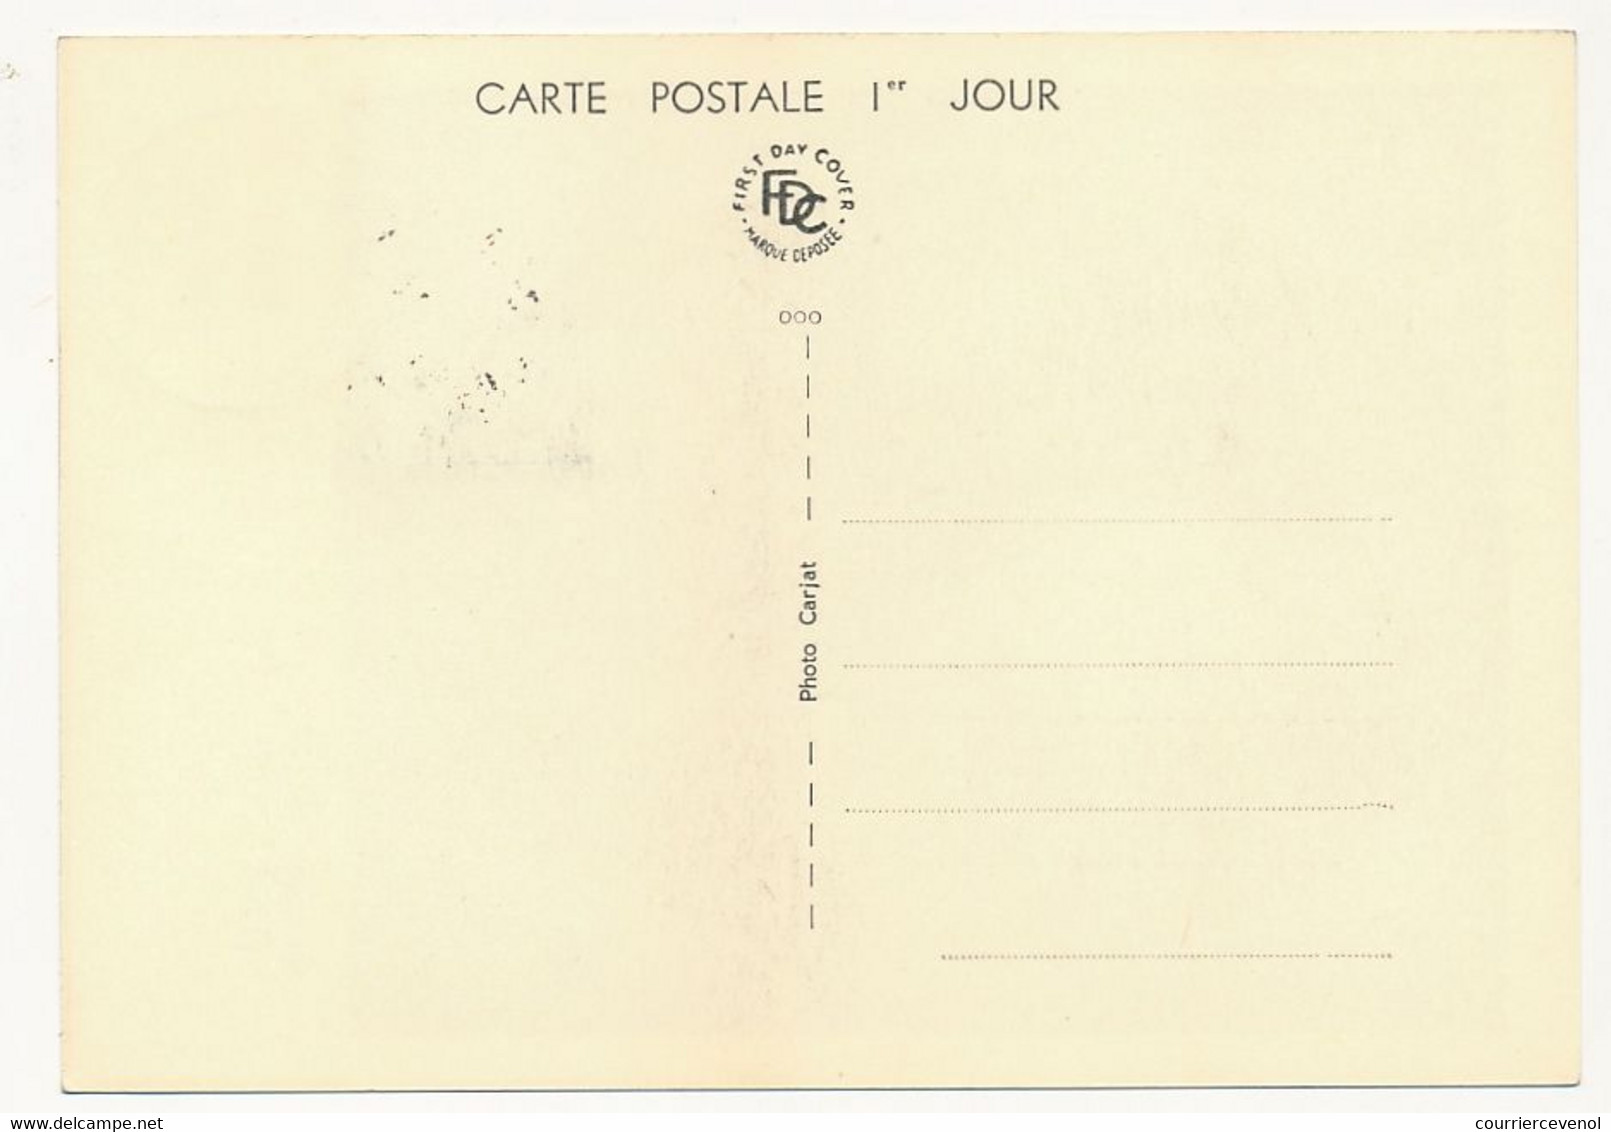 FRANCE - 6 Cartes Maximum - Célébrités 1960 - M. de l'Hospital, Turenne, Charcot, Boileau, Degas, Bizet